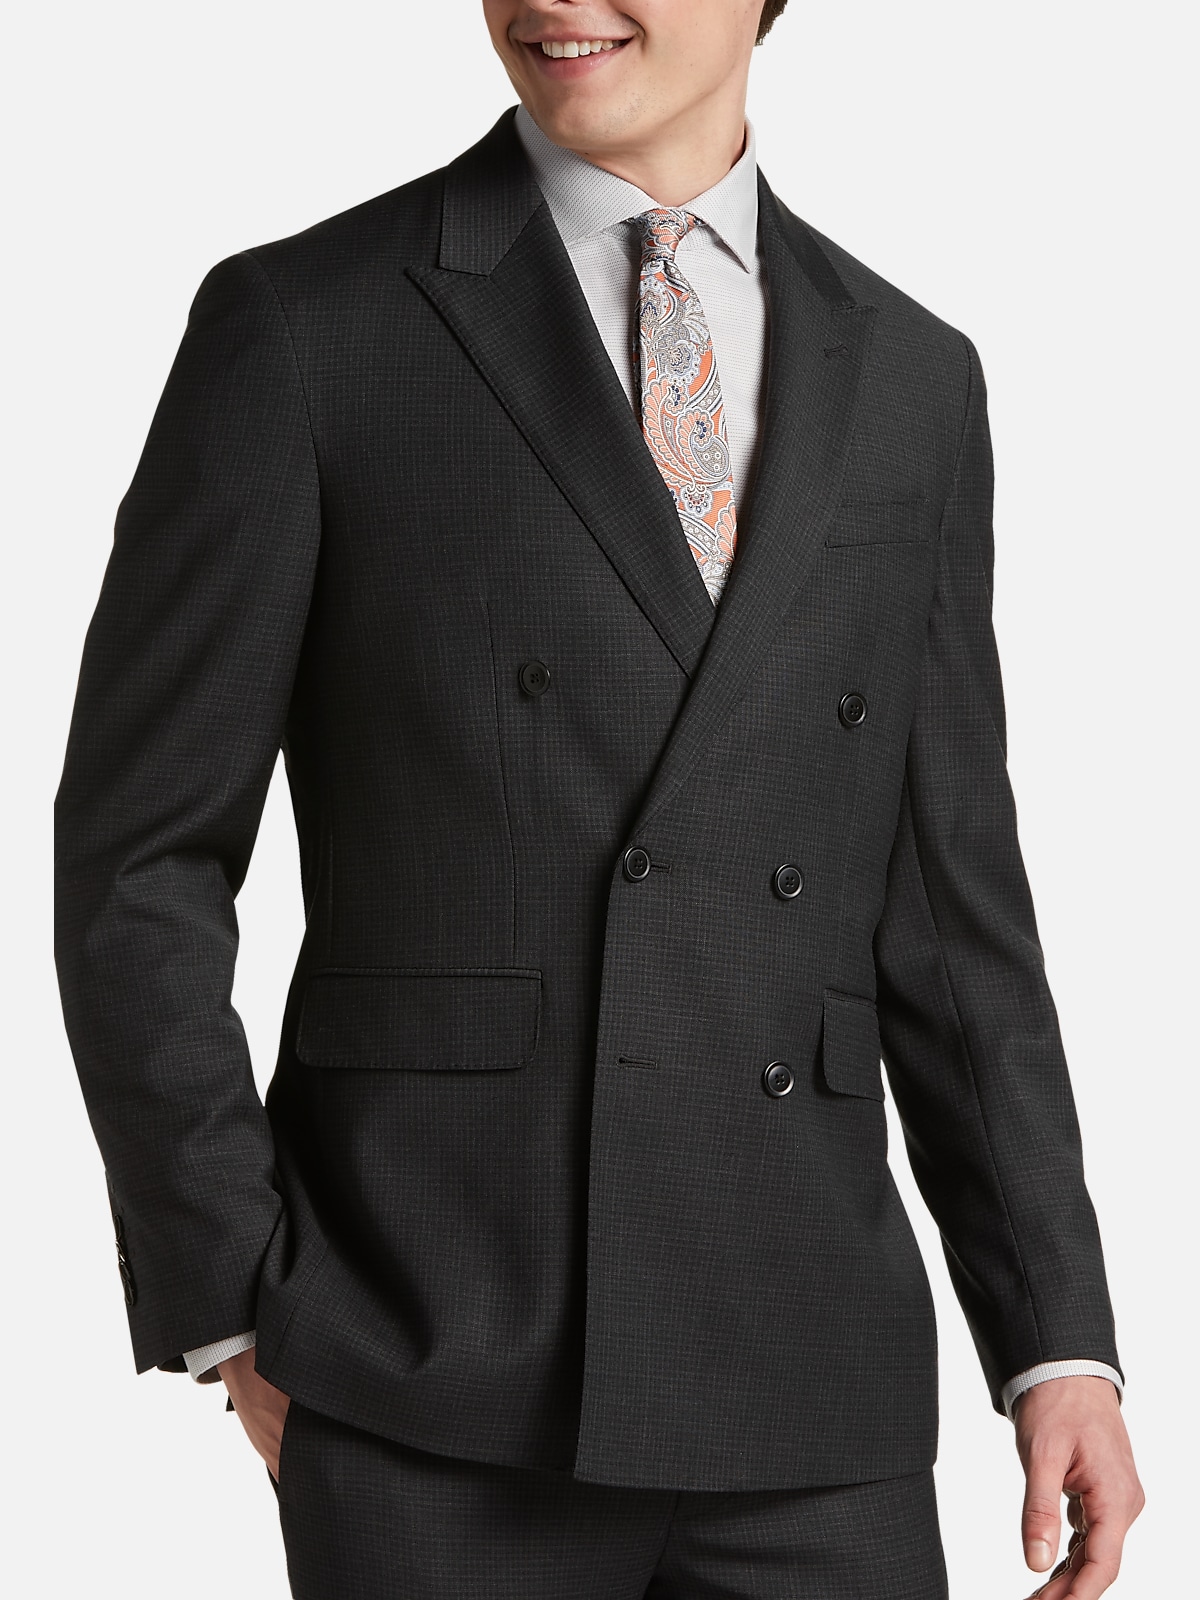 JOE Joseph Abboud Slim Fit Check Suit Separates Jacket | All Sale| Men ...